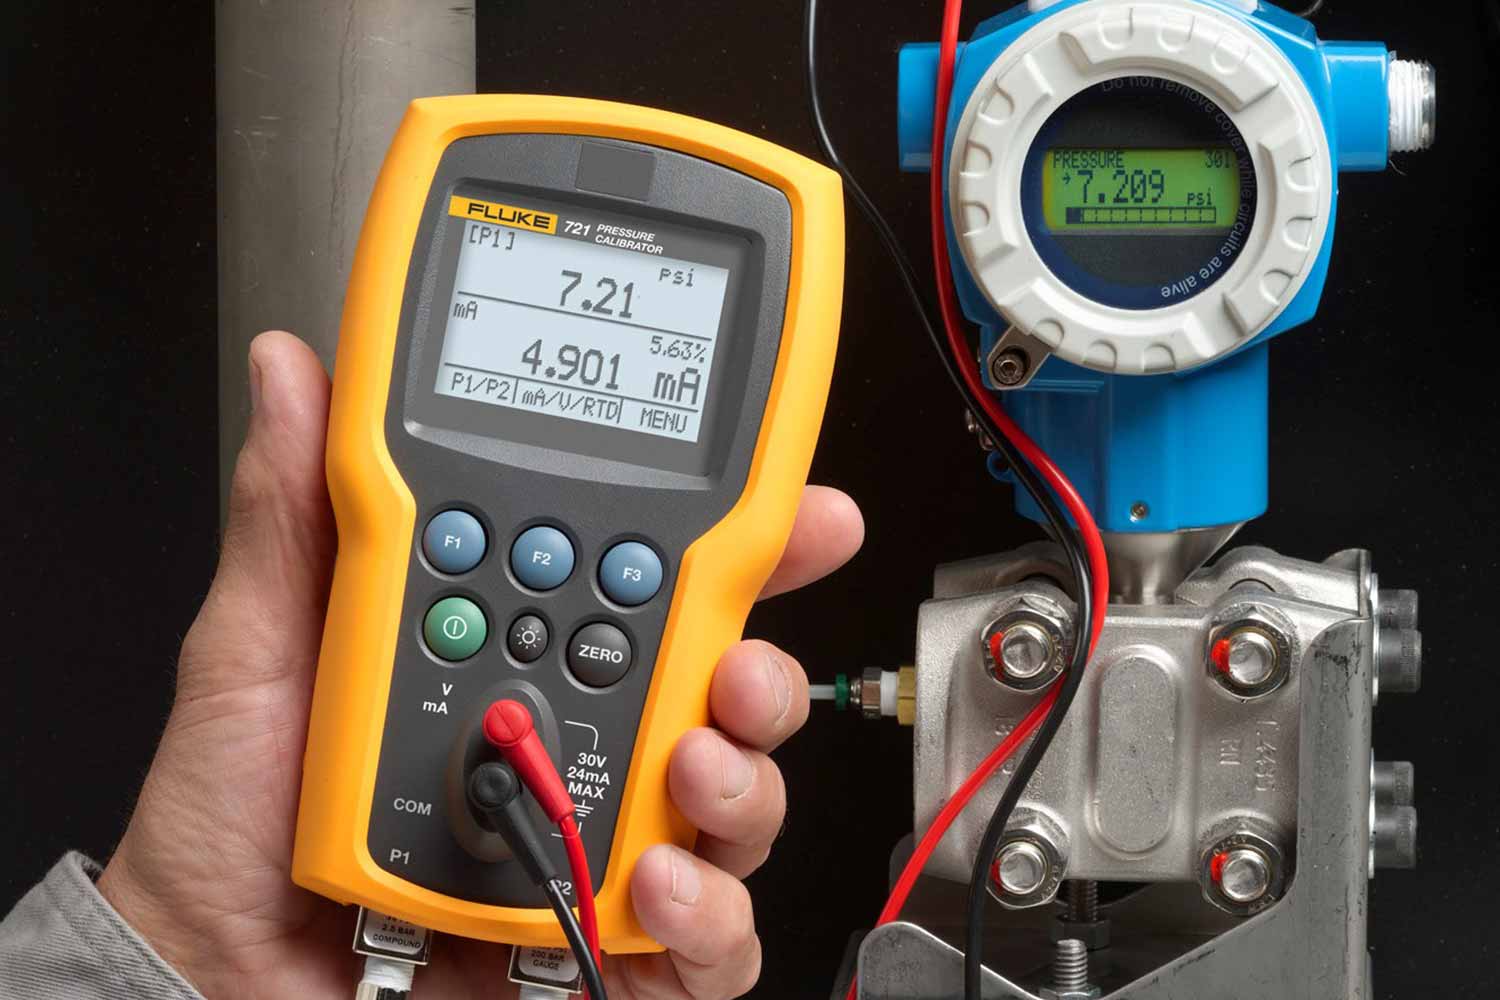 Calibrador de presión de precisión Fluke 721